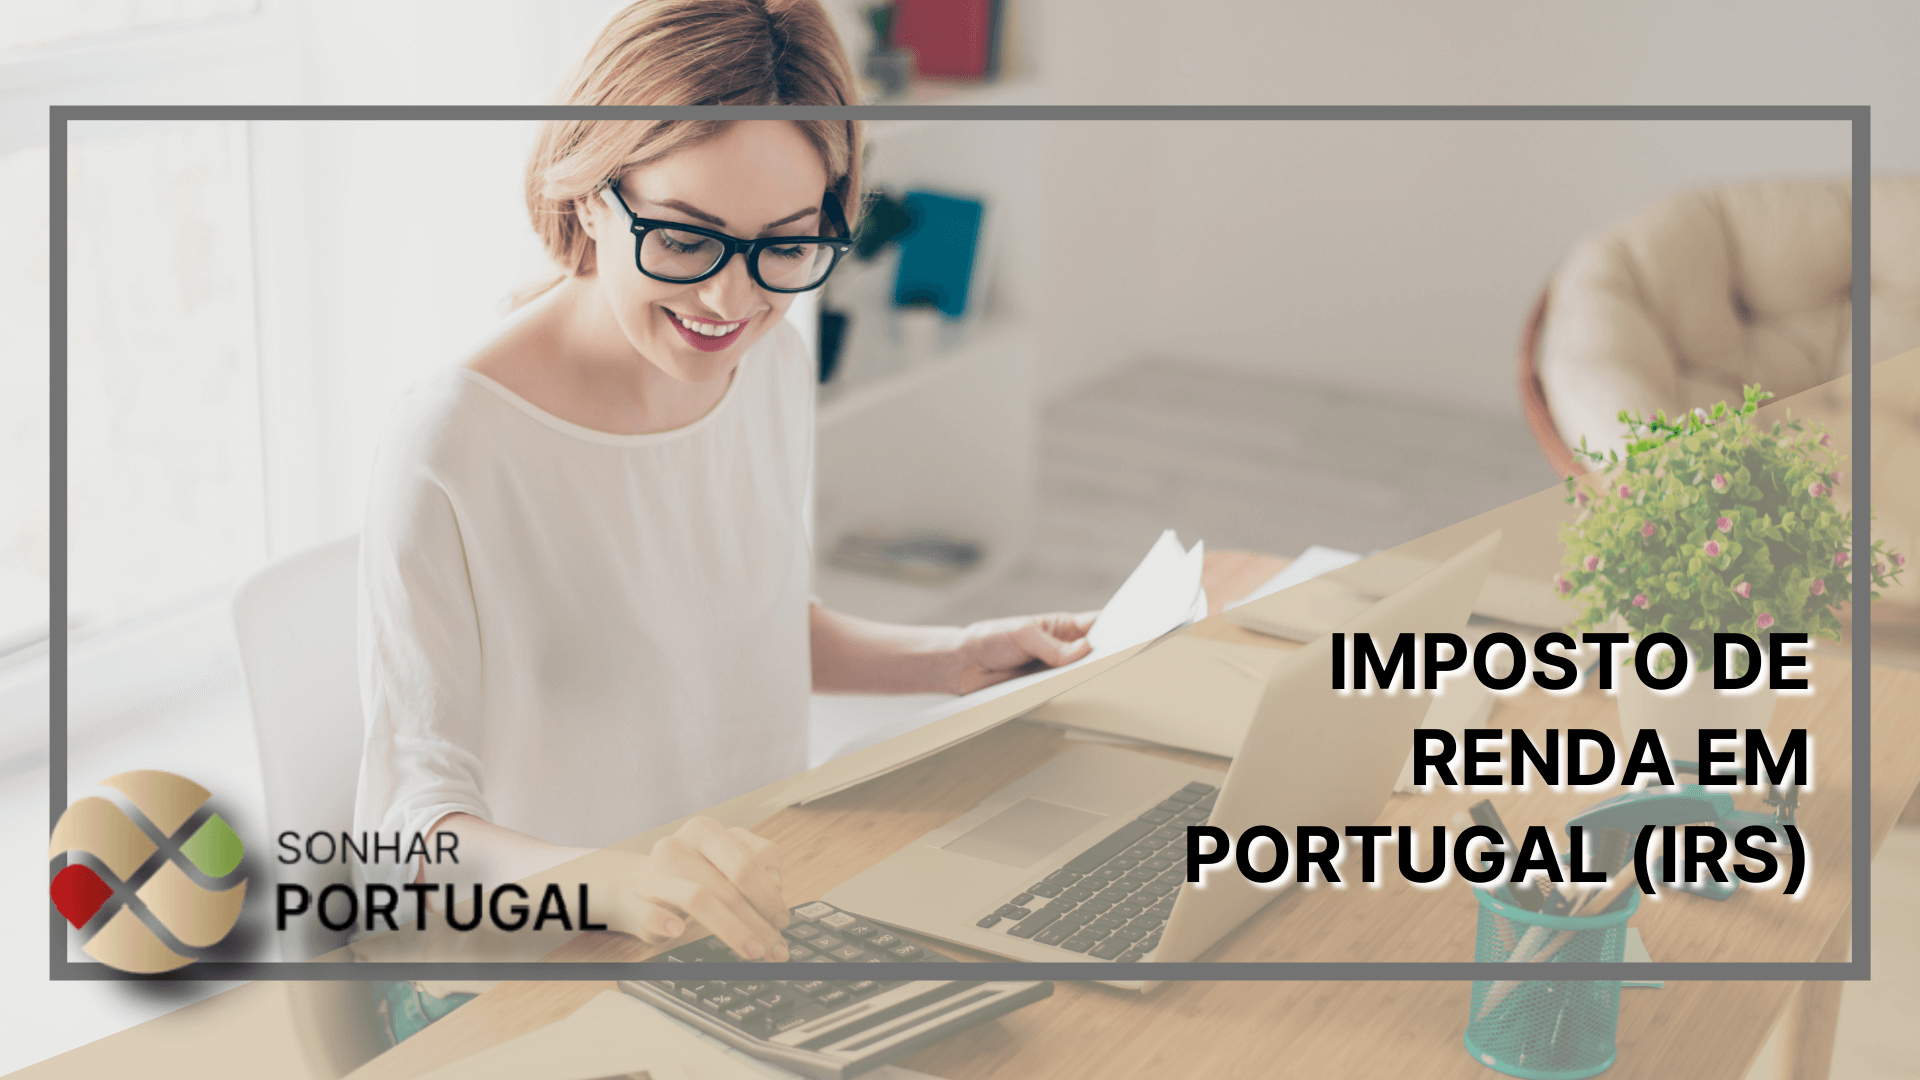 Imposto de Renda em Portugal (IRS). Sonhar PortugalAssessoria Migratória